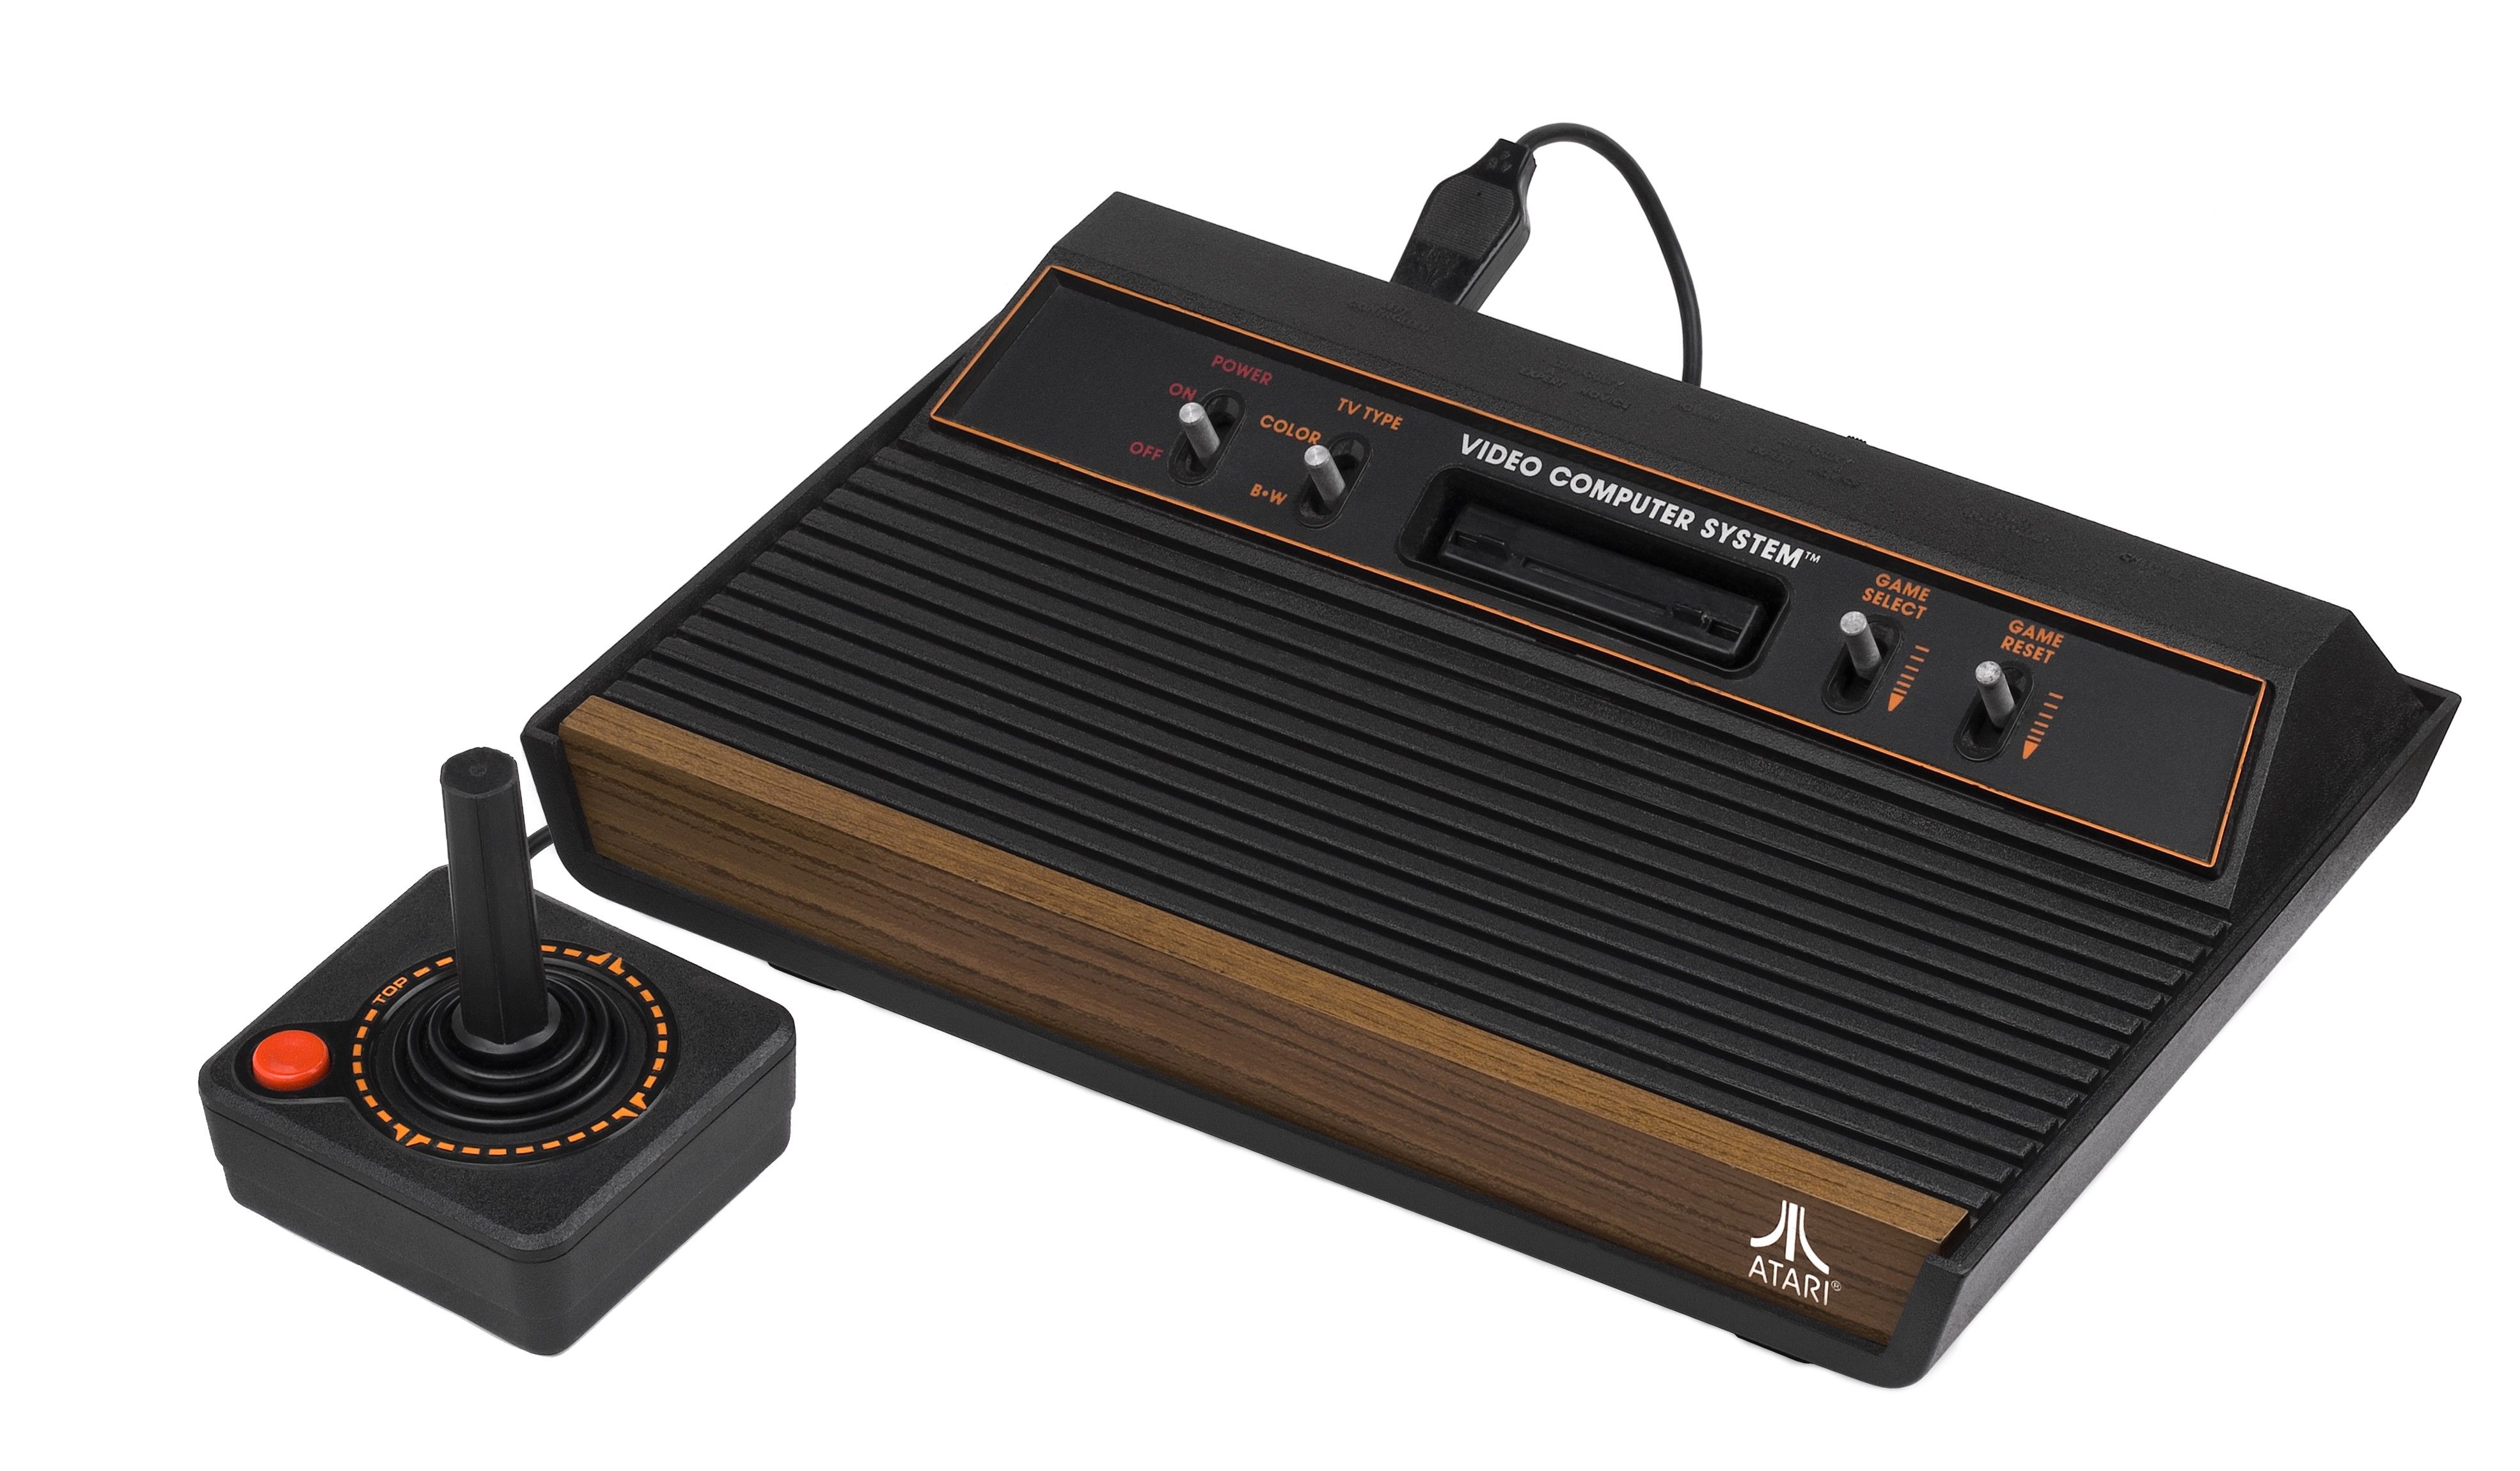 Atari 2600 VCS circa 1980